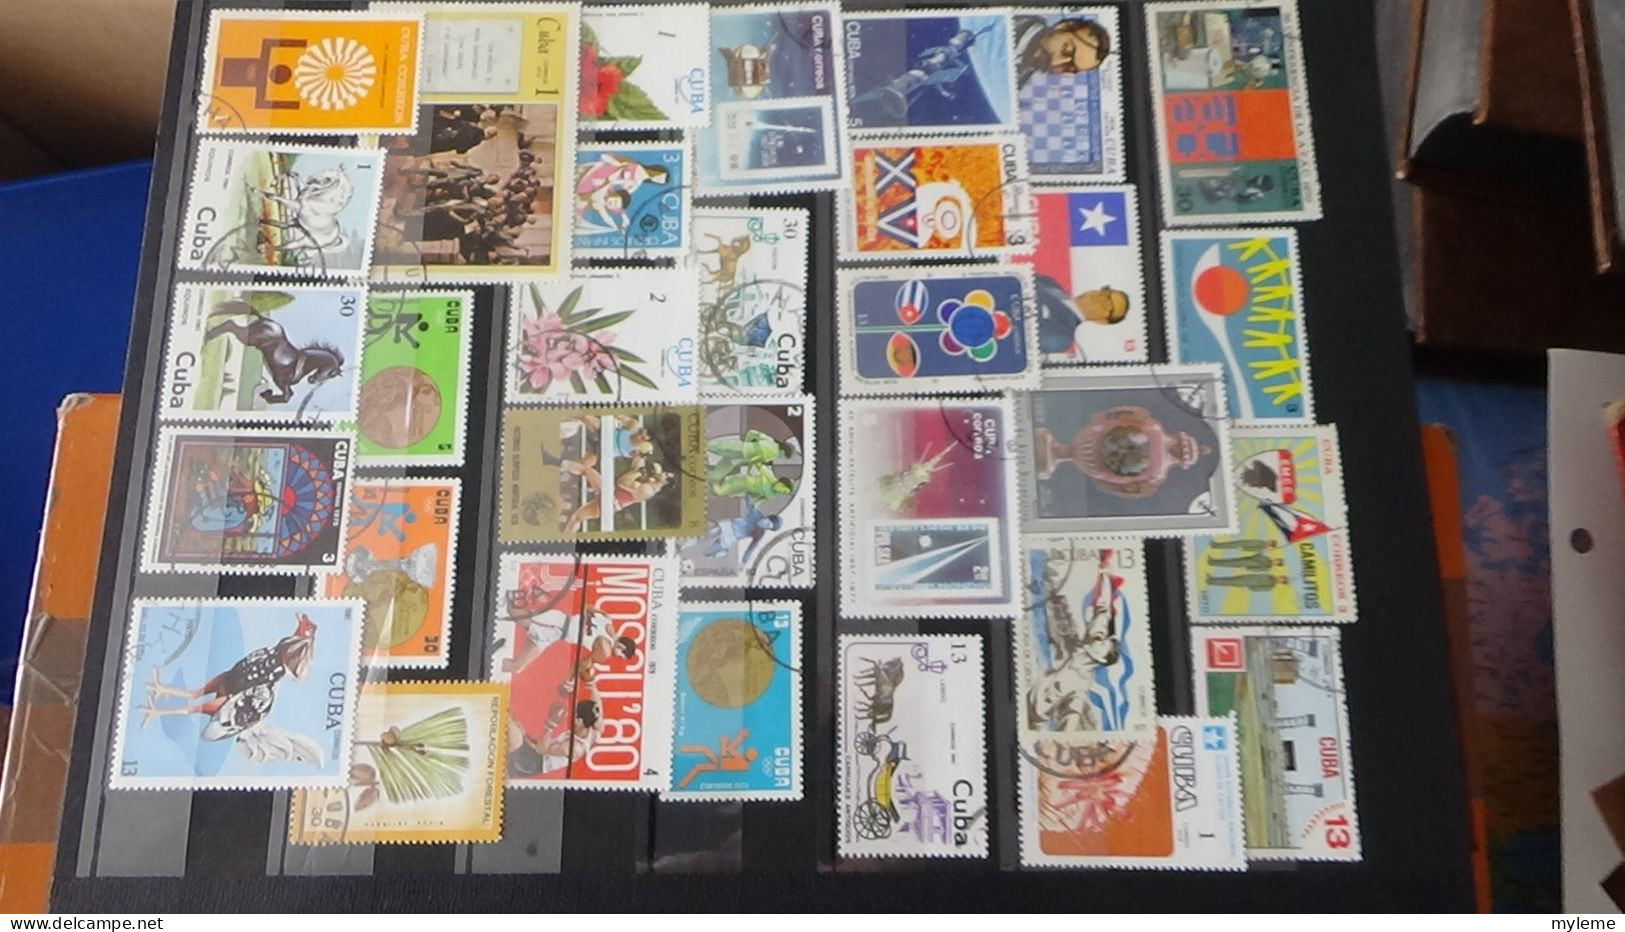 BF17 Ensemble de timbres et blocs oblitérés de divers pays + plaquette de timbres ** de la libération. Cote sympa !!!.